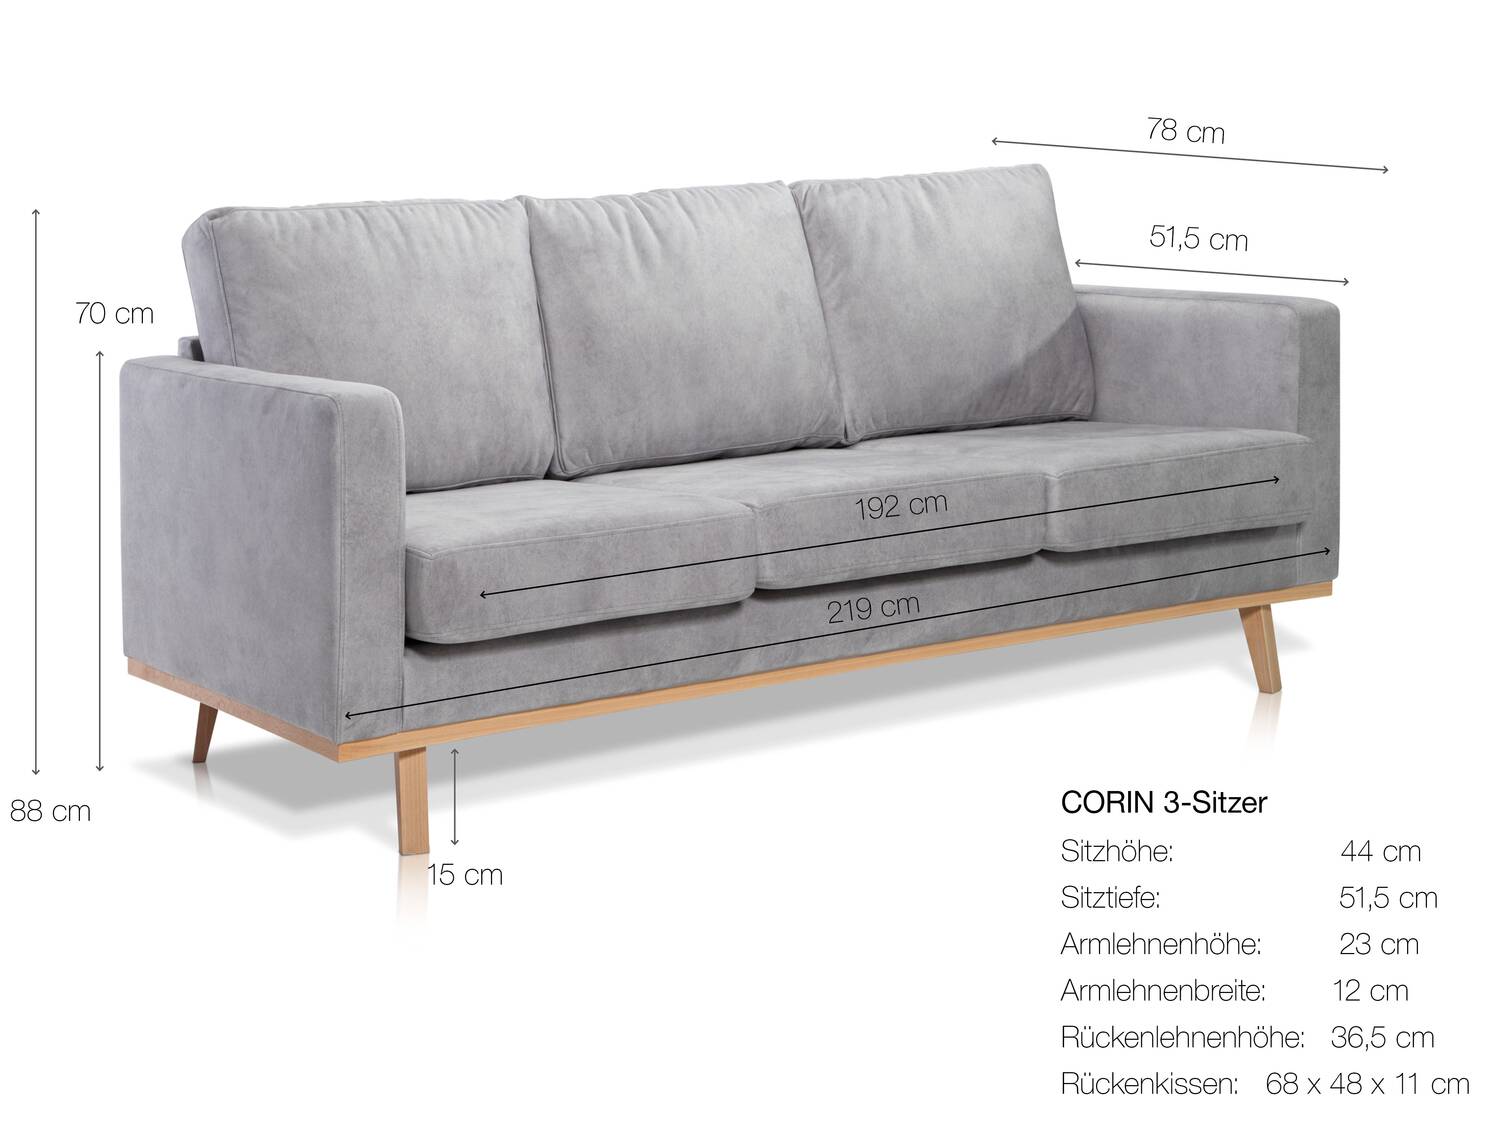 CORIN 3-Sitzer Sofa mit Echtholz-Untergestell, Bezug in Velour-Optik Silbergrau